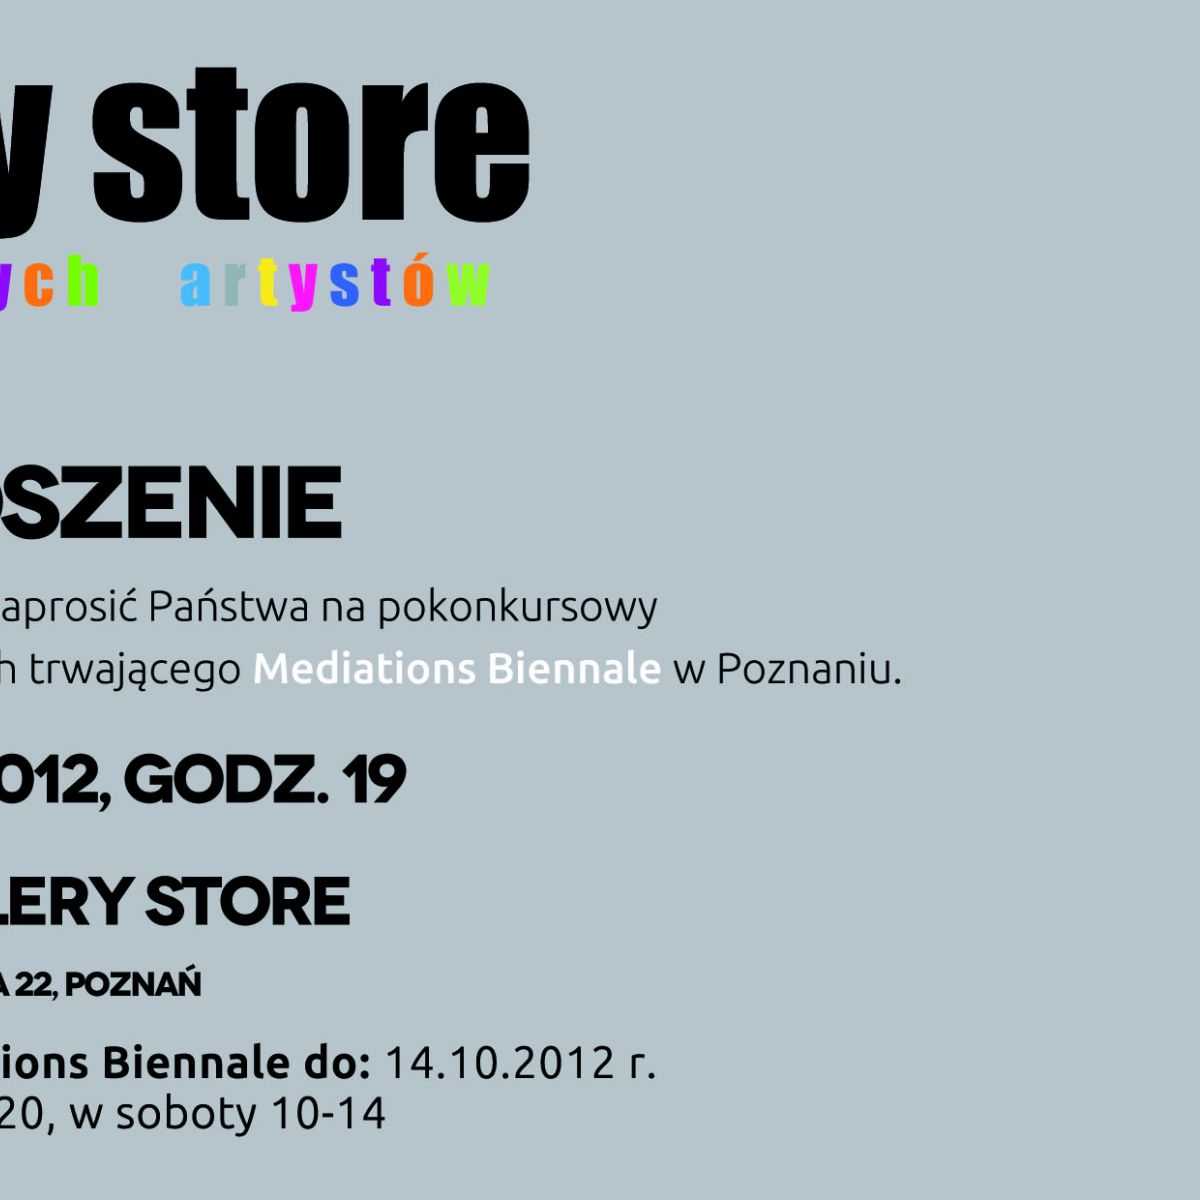 Zapraszamy na wystawę Untouchable do Poznania - czynna codziennie od 17-20, sobota 10-14!